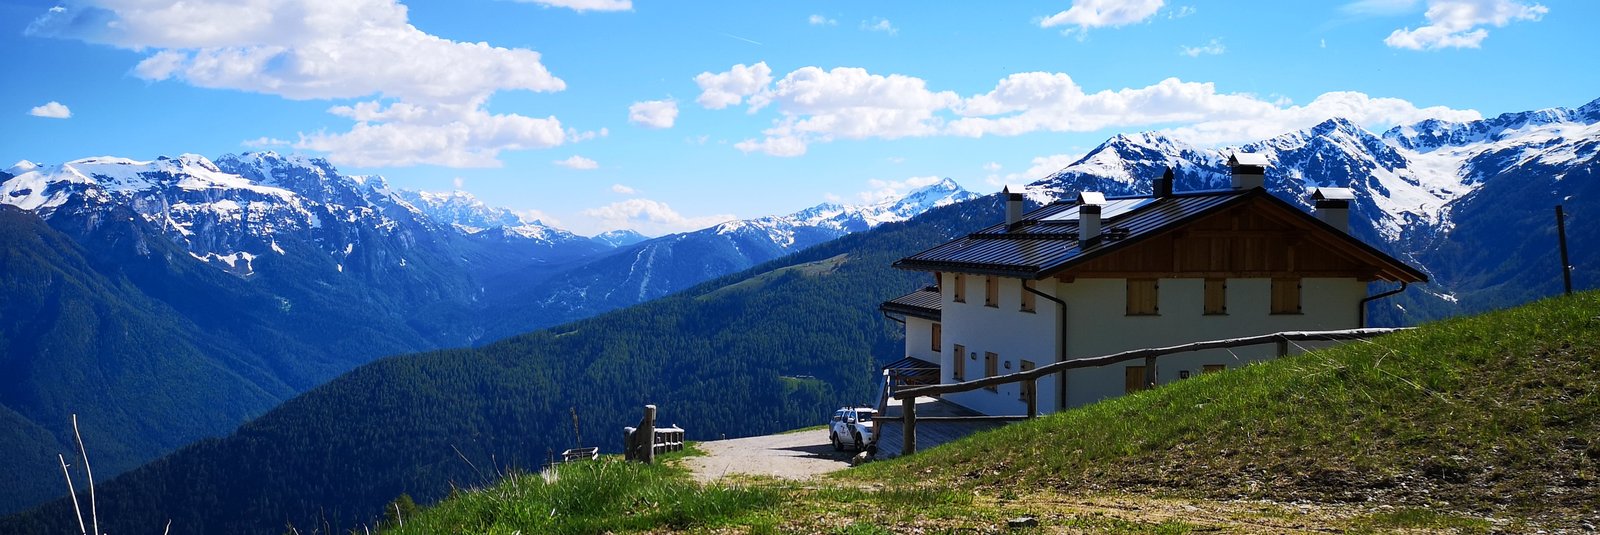 Val di Rabbi Trekking - parco nazionale dello stelvio, Trentino